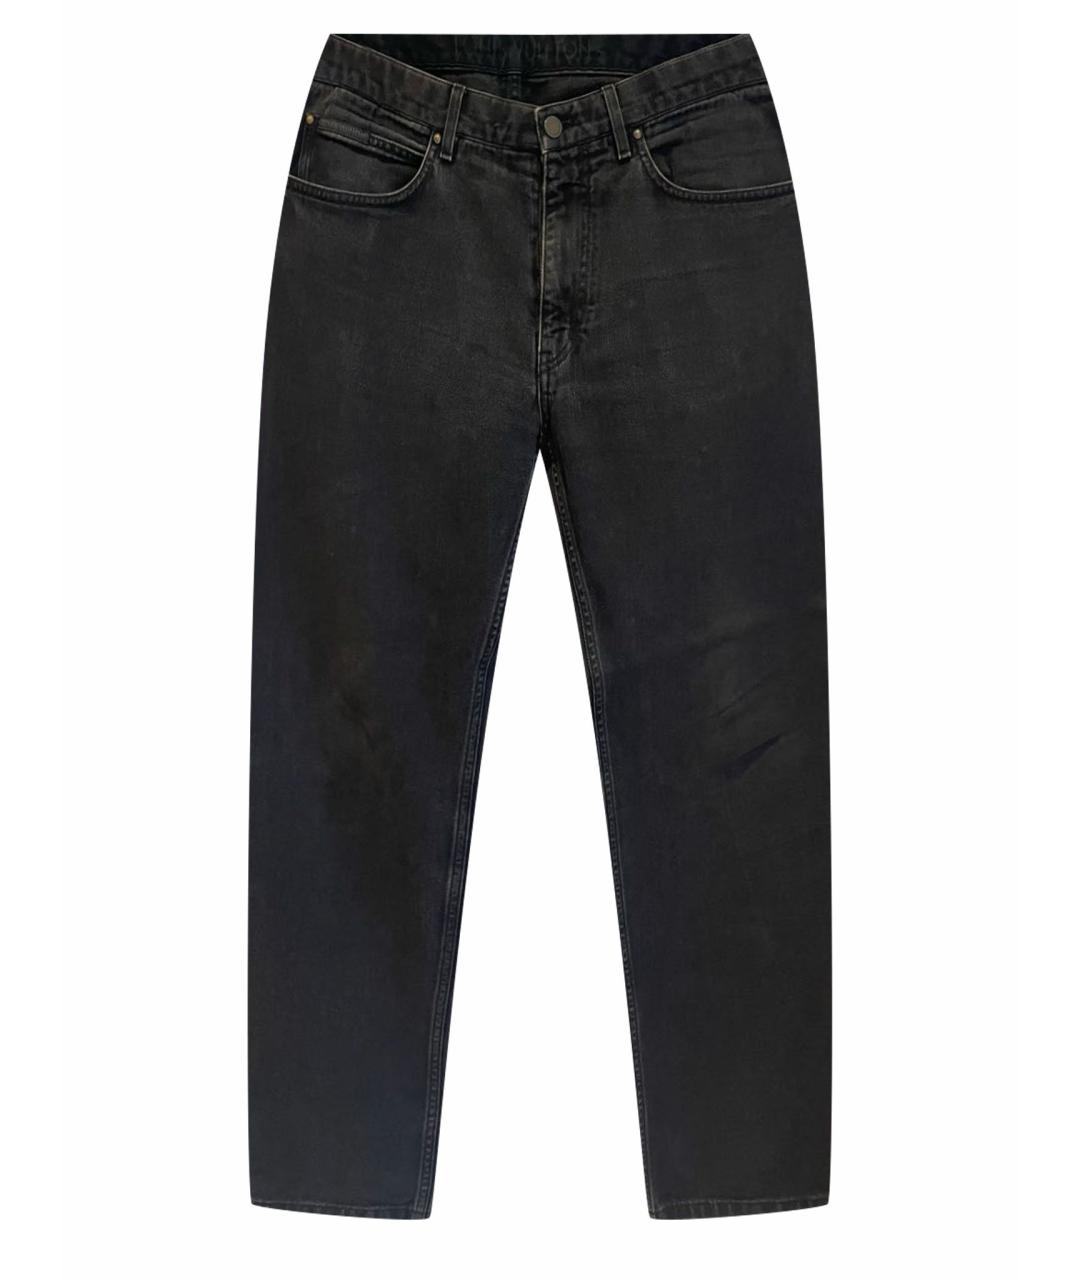 LOUIS VUITTON PRE-OWNED Антрацитовые хлопковые джинсы скинни, фото 1